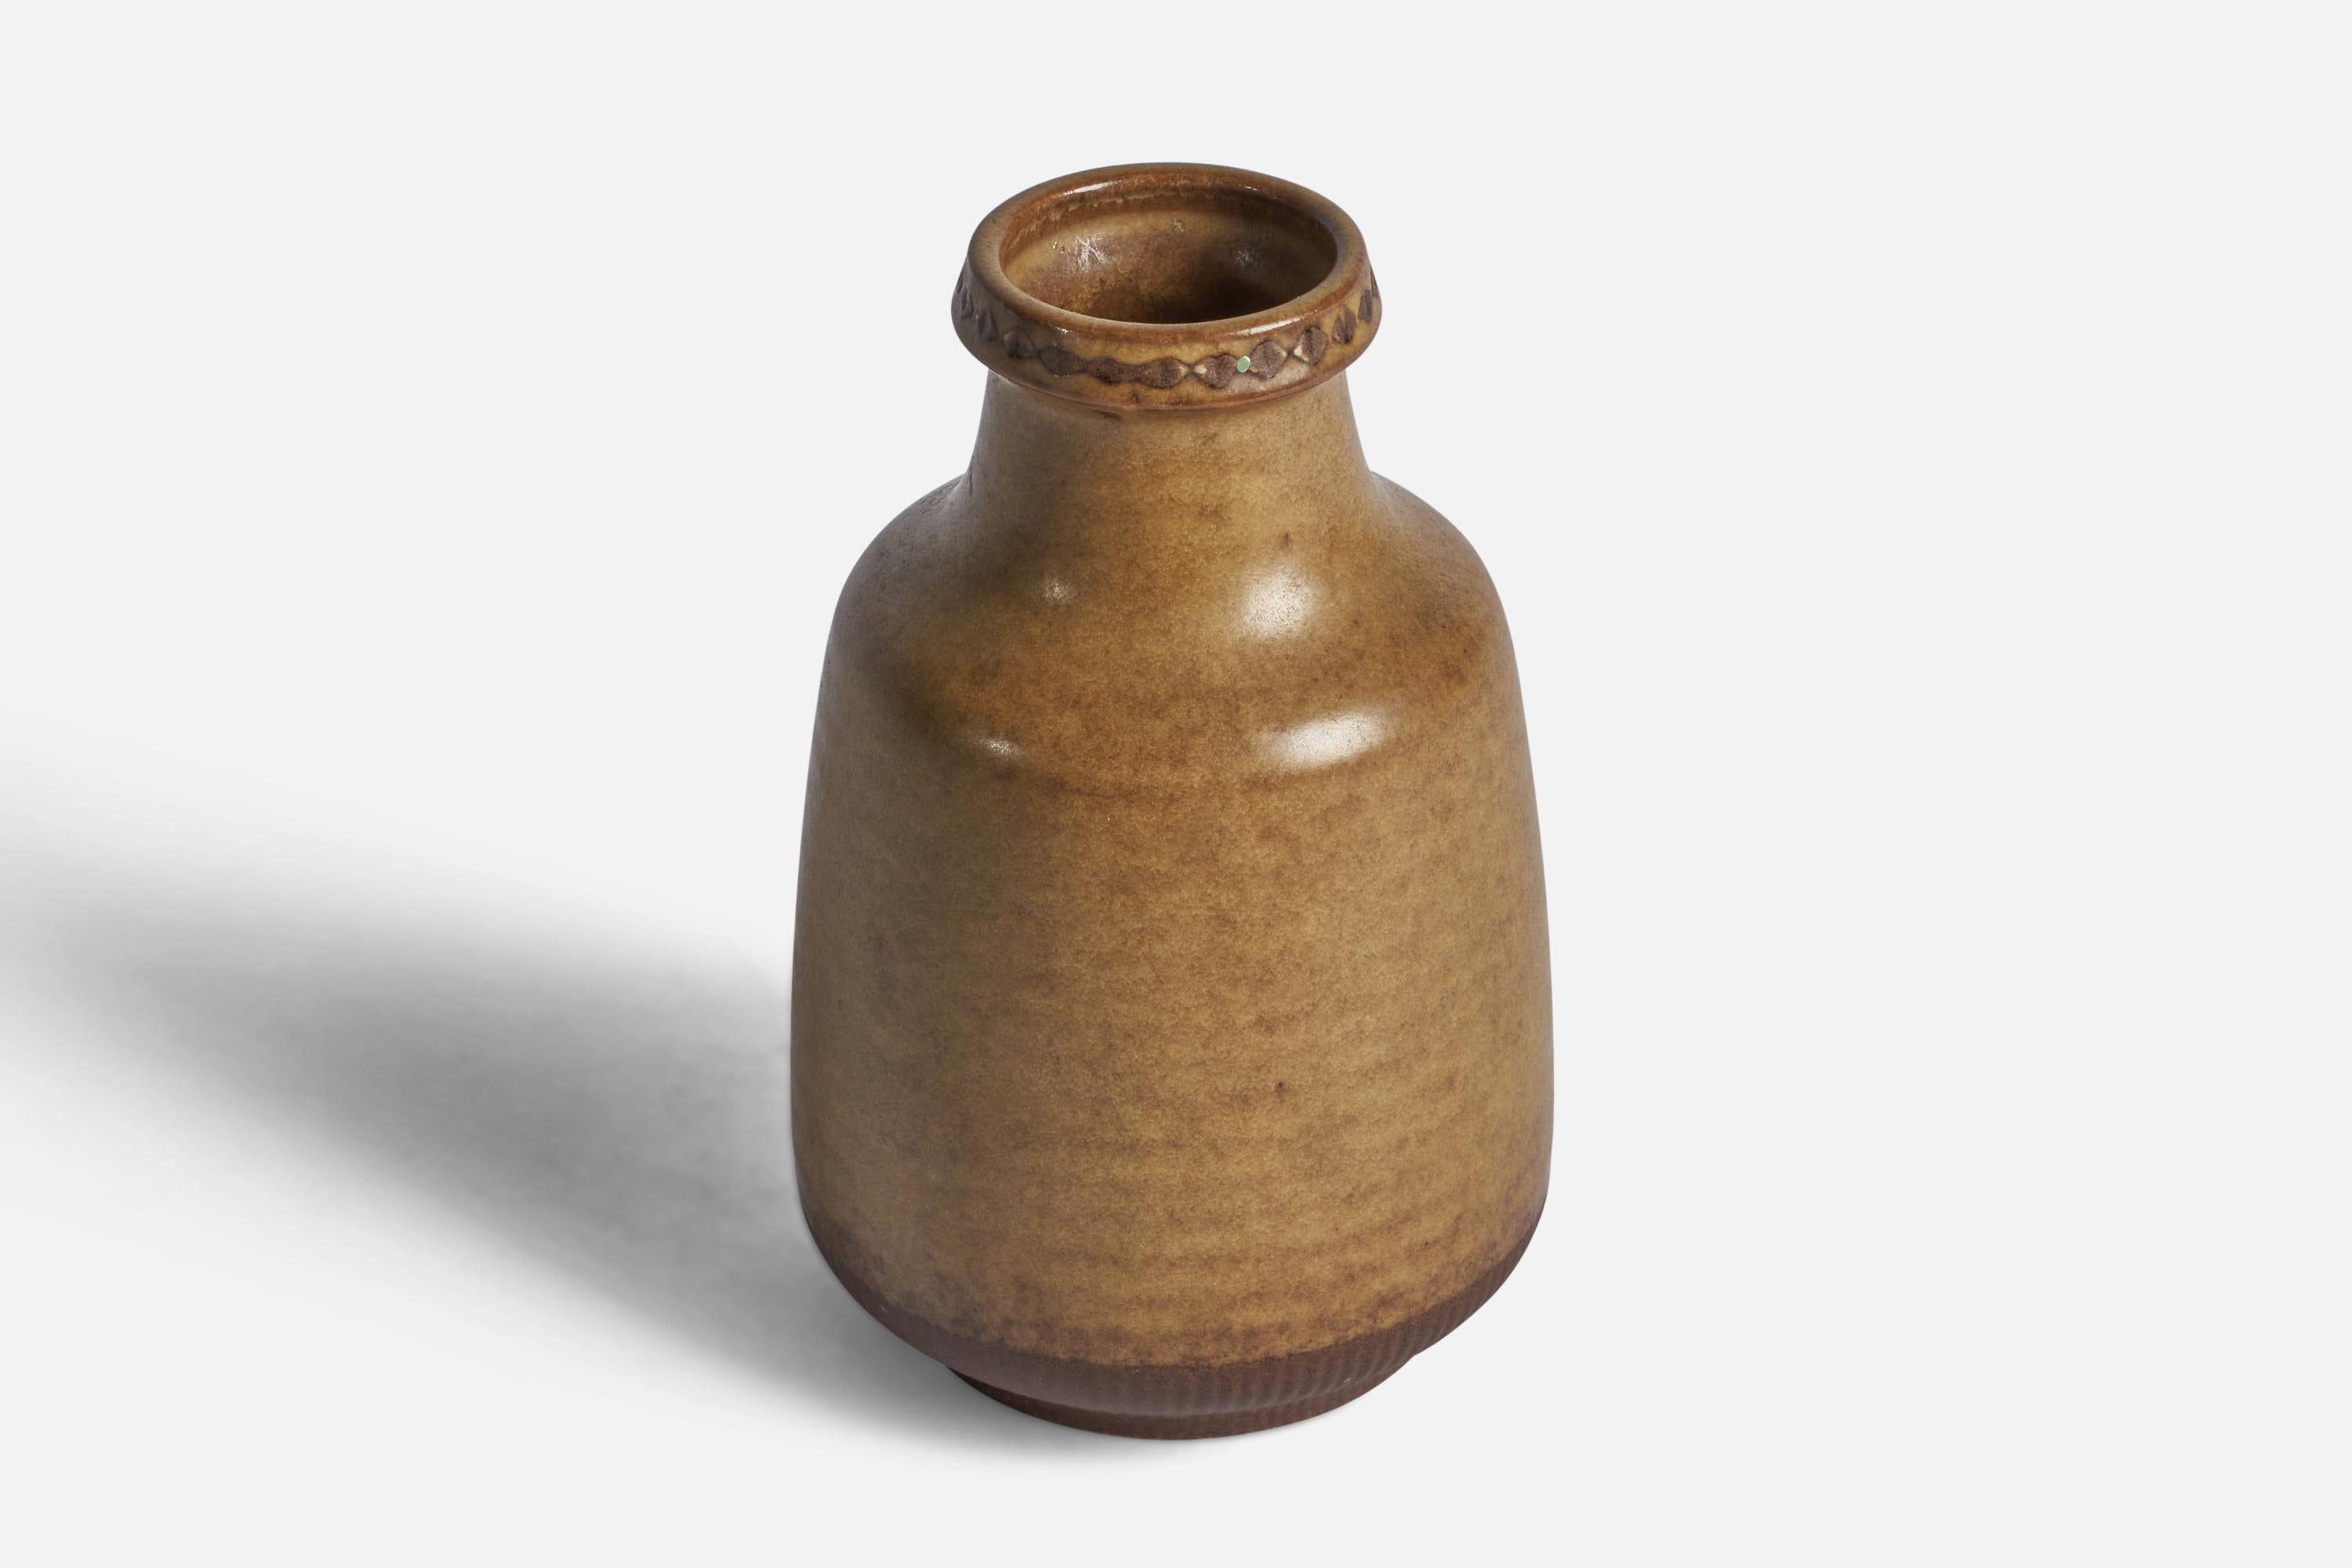 Scandinavian Modern Gunnar Nylund, Vase, Stoneware, Sweden, 1940s For Sale